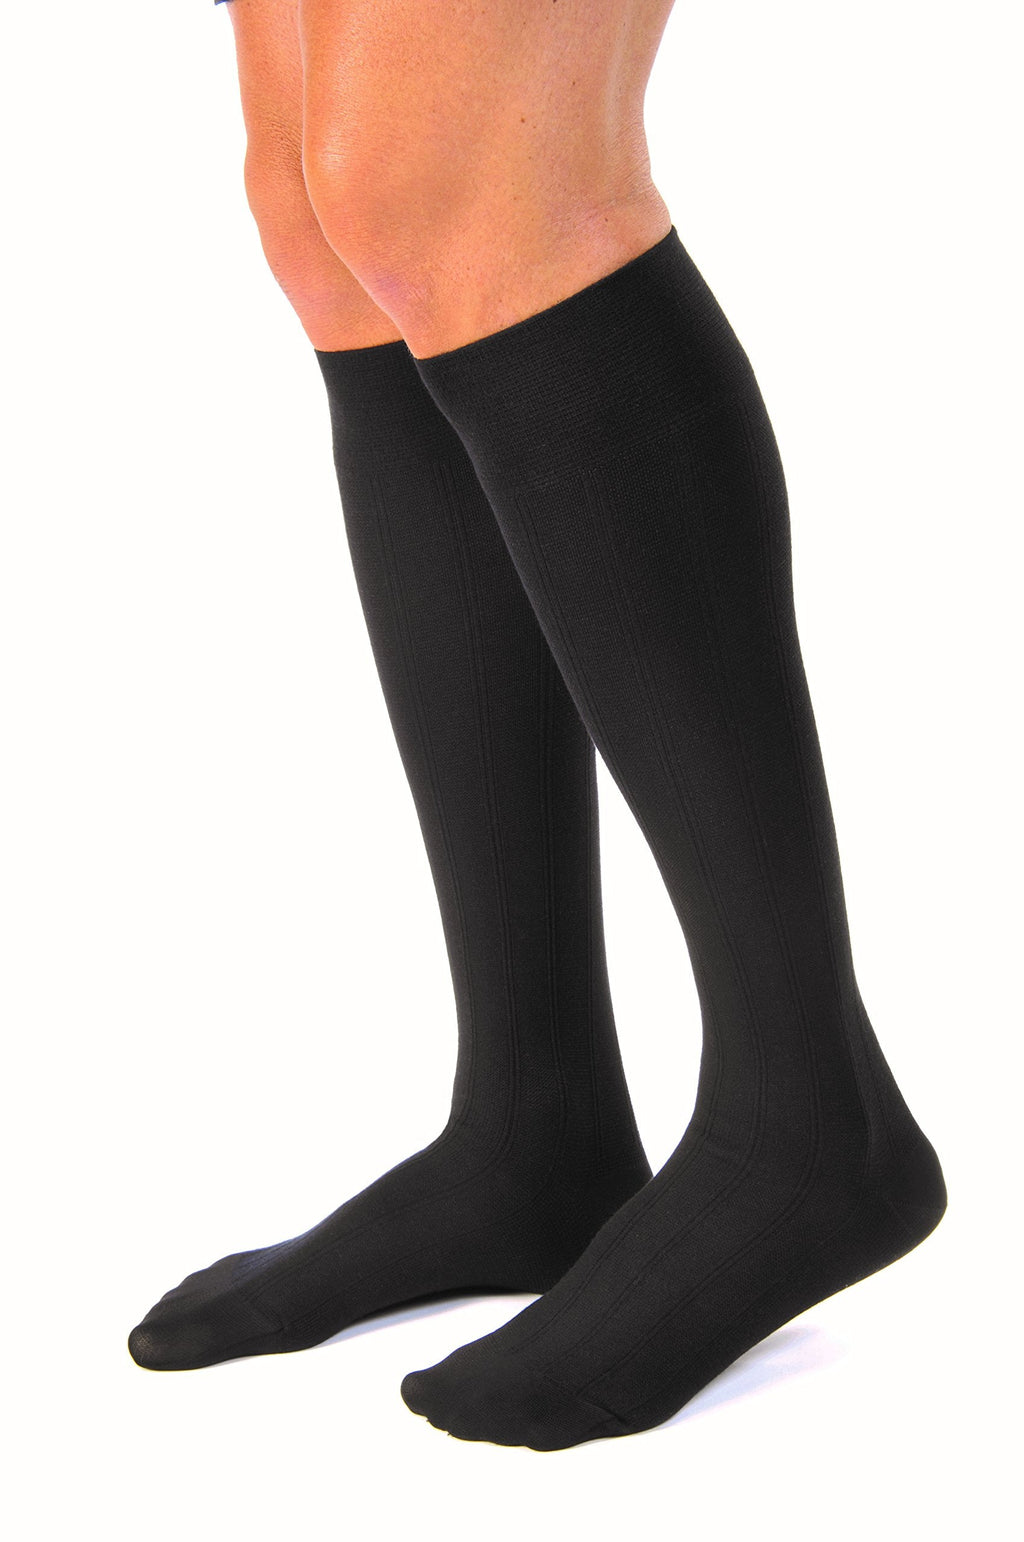 [Australia] - Jobst for Men Casual Closed Toe Knee High Socks 20 30 mmHg Tall Large Full Calf Black 